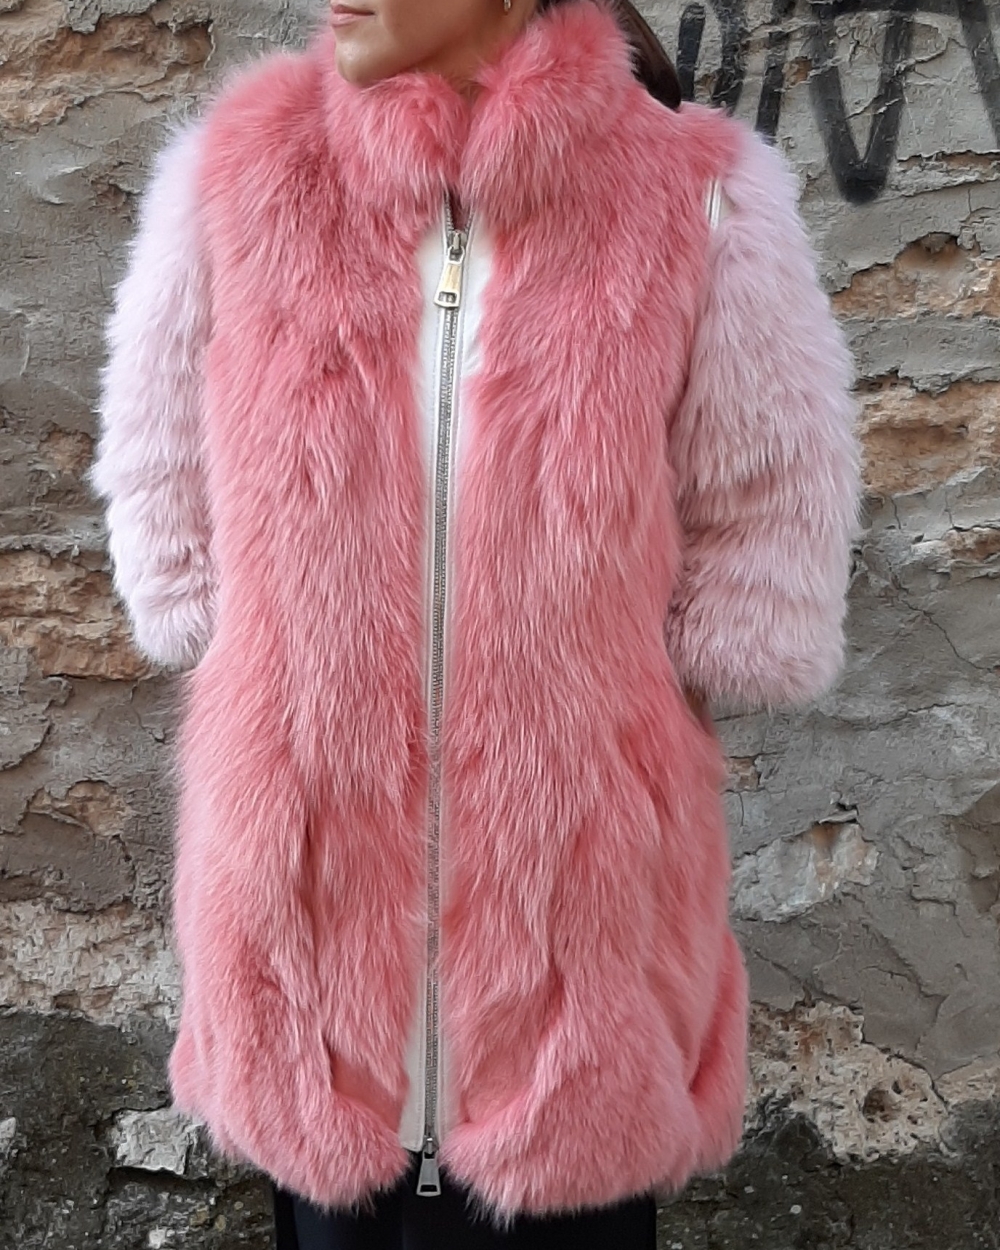 Pink Fur Coat. 100% Real Fur Coats and Accessories.